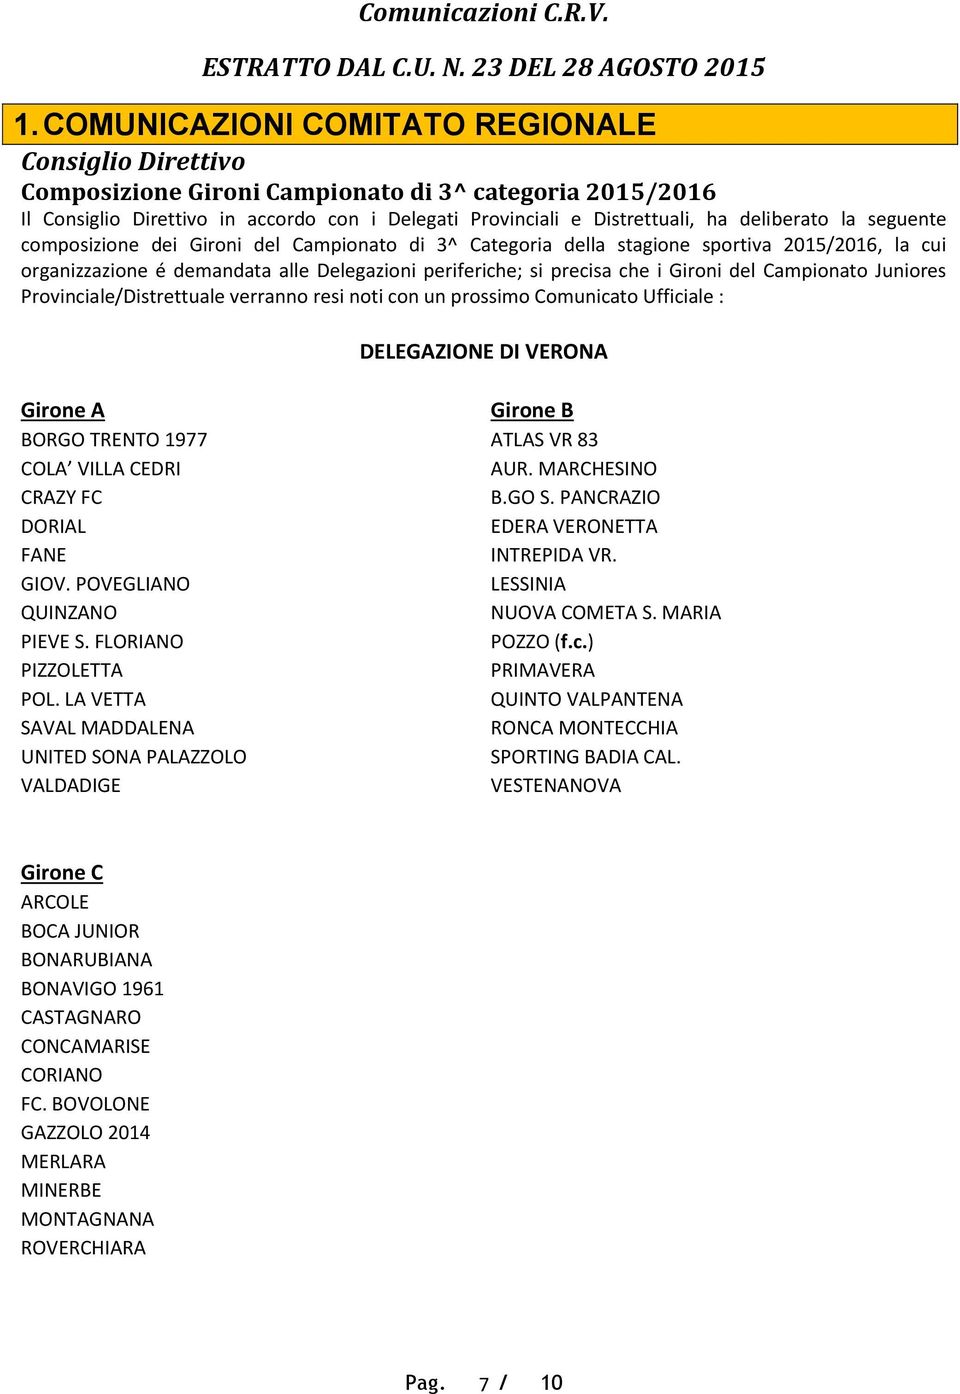 deliberato la seguente composizione dei Gironi del Campionato di 3^ Categoria della stagione sportiva 2015/2016, la cui organizzazione é demandata alle Delegazioni periferiche; si precisa che i